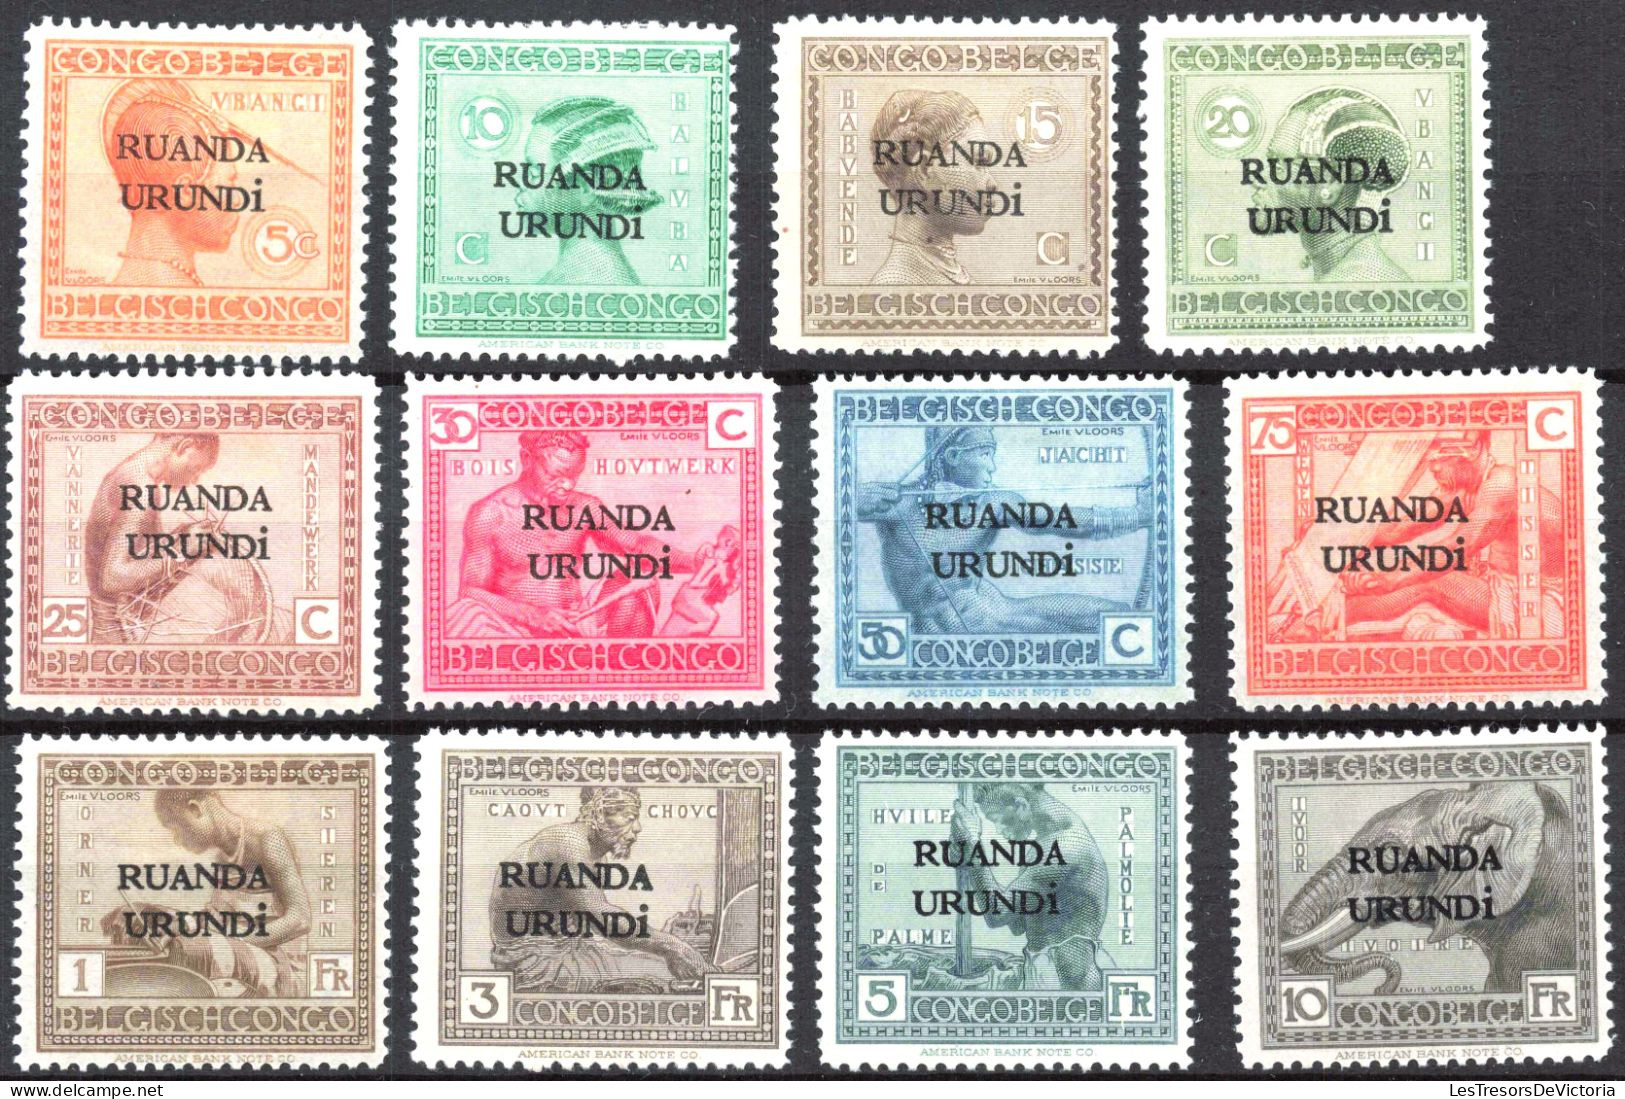 Timbre - Ruanda Urundi - COB 50/61* - 1924 - Timbre Congo Belge Surchargés Ruanda Urundi - Cote 45 - Neufs